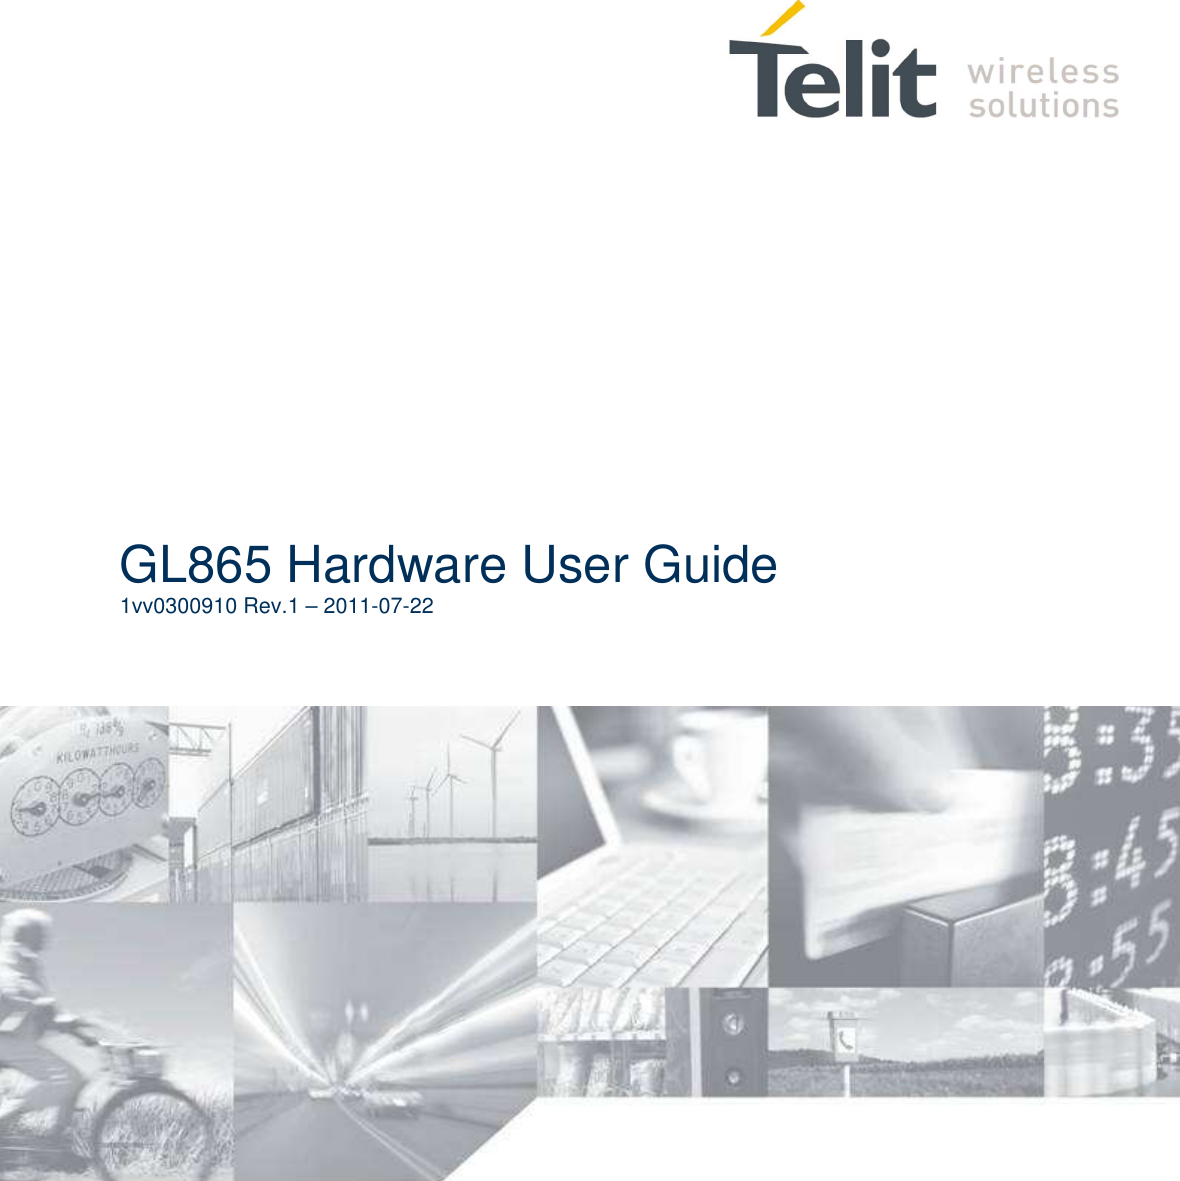                   GL865 Hardware User Guide 1vv0300910 Rev.1 – 2011-07-22  